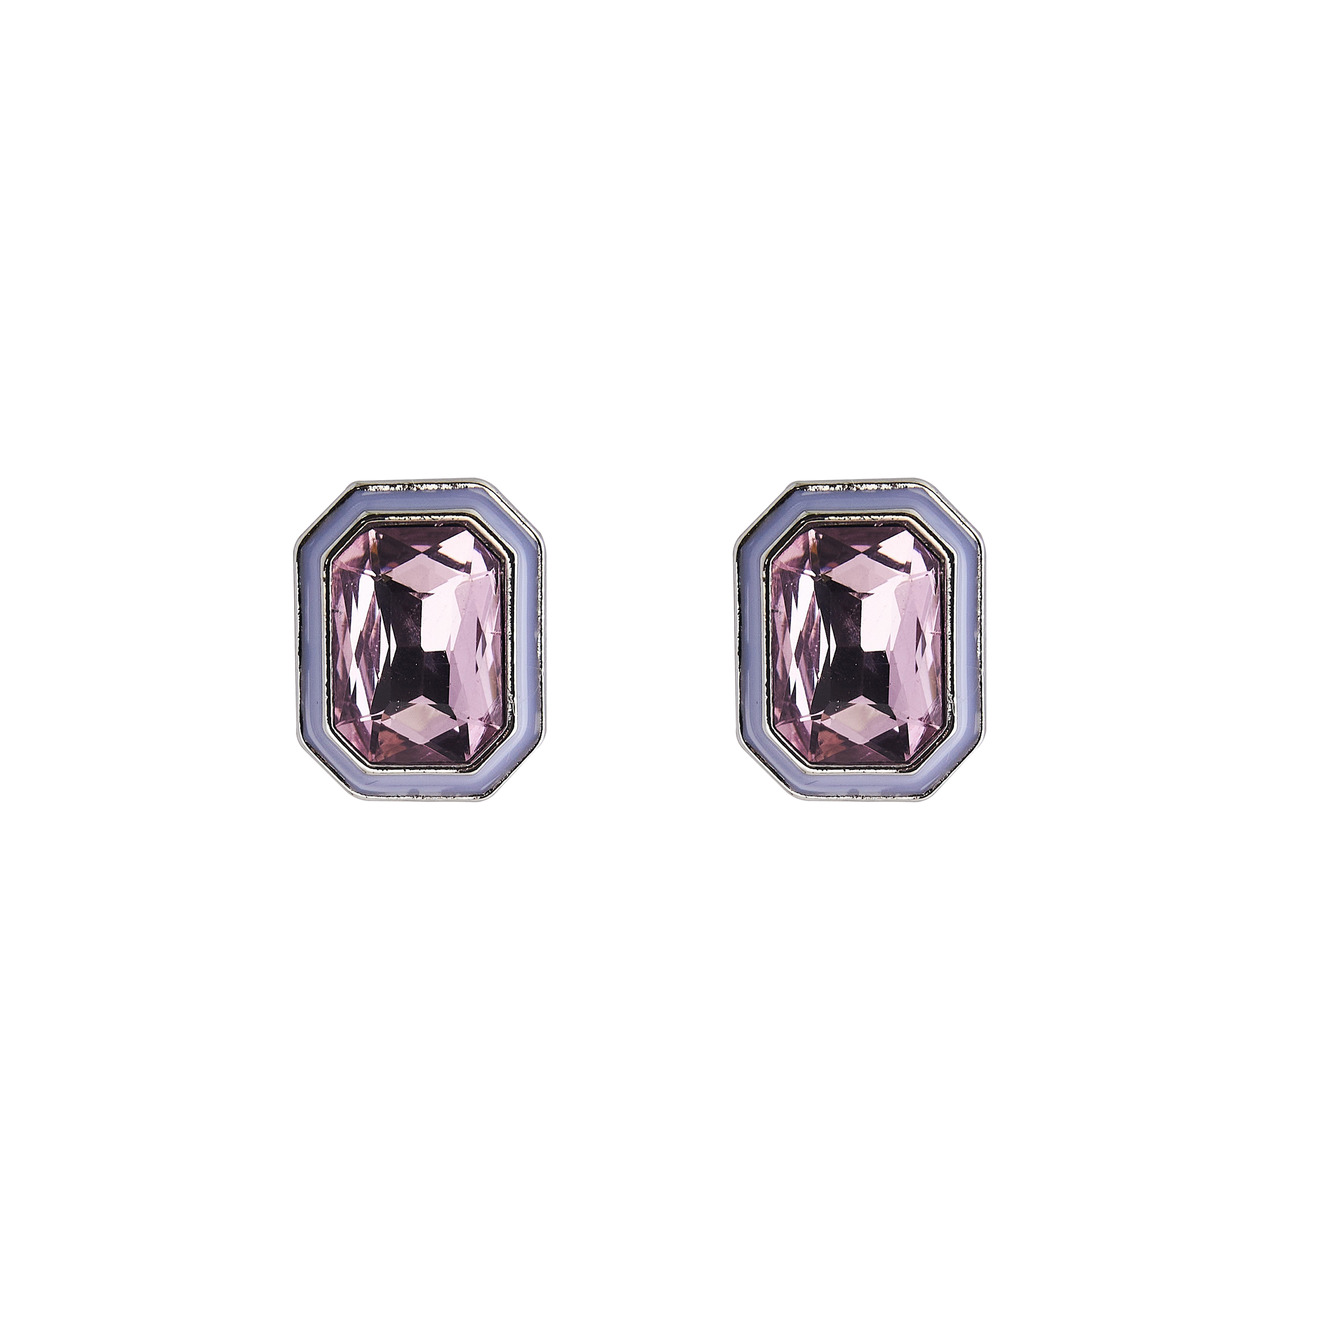 Herald Percy Серебристые серьги с розовыми кристаллами и белой эмалью длинные серебряные серьги с розовыми кристаллами и натуральными гематитами